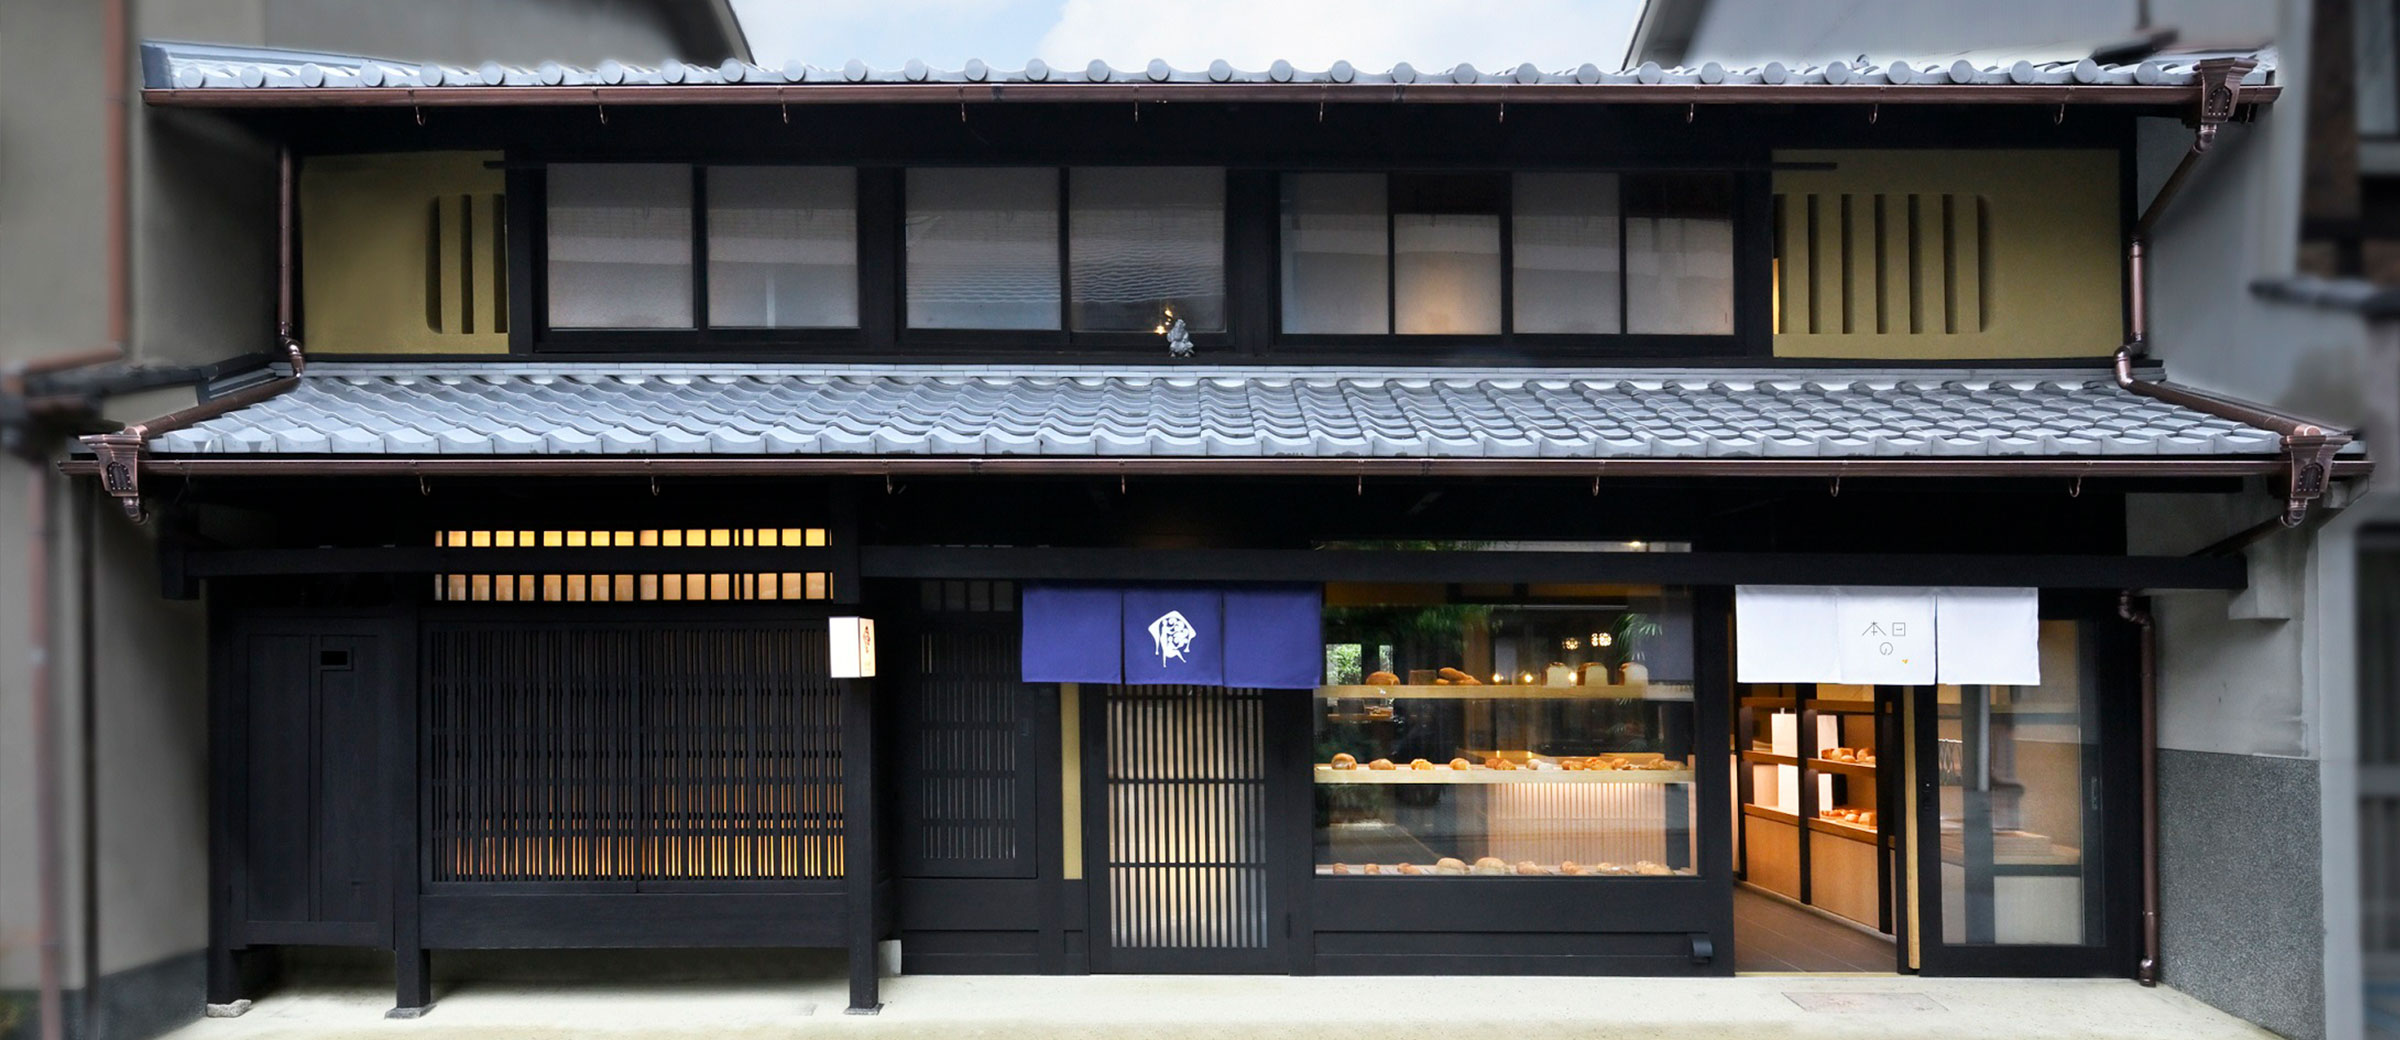 京町家一棟貸しの宿「京の温所 竹屋町」がオープン。［パンとエスプレッソと］の新ブランドが併設